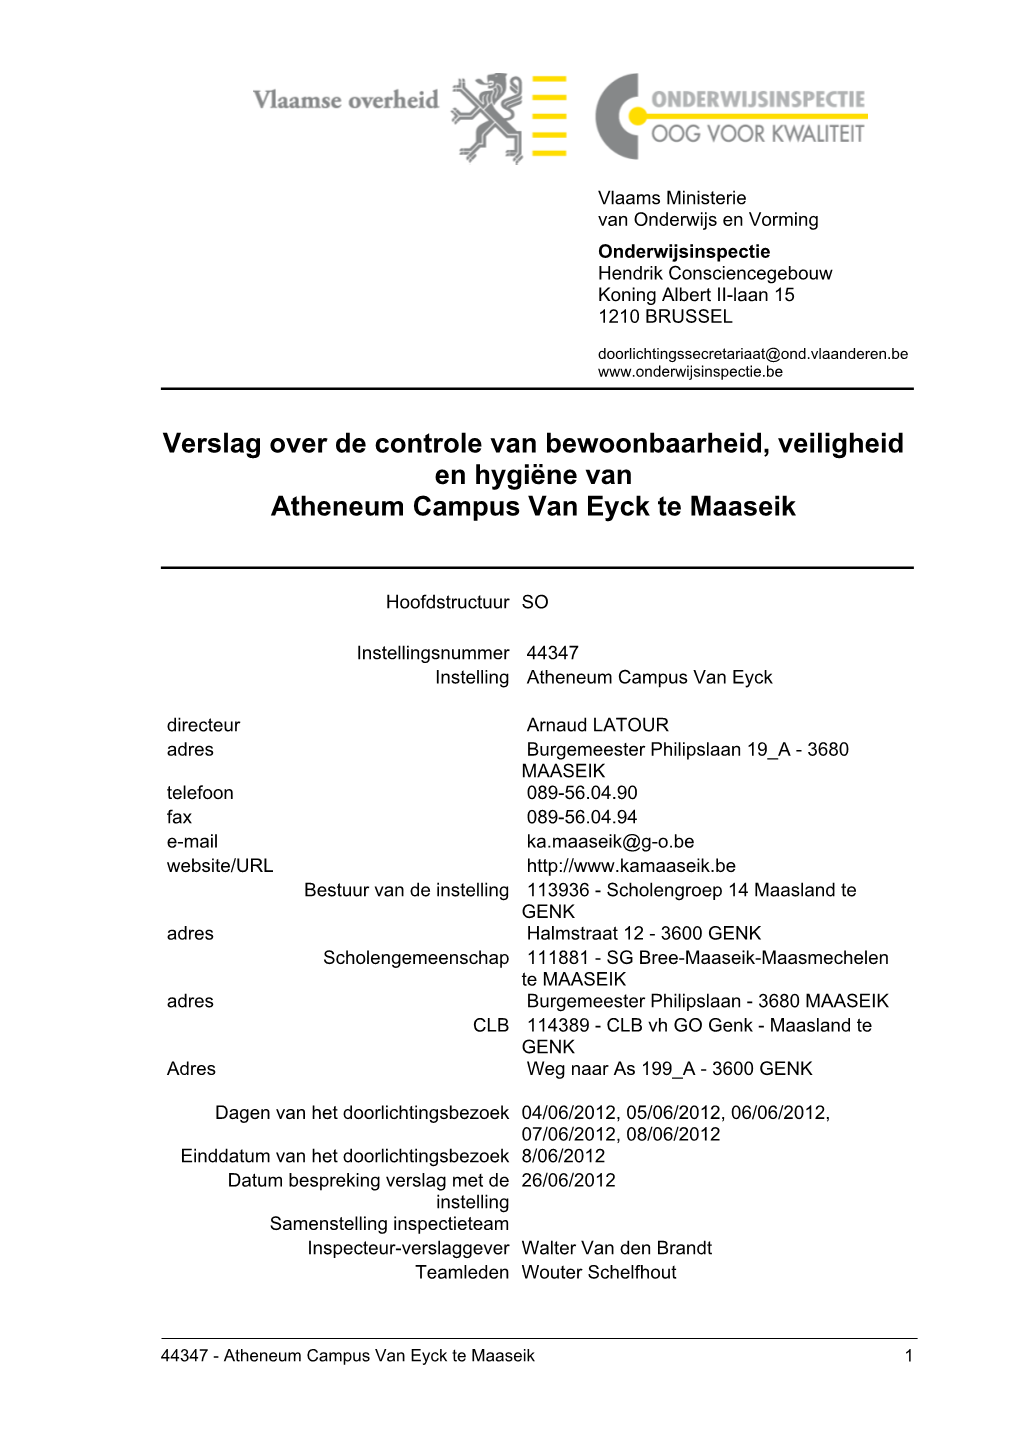 Verslag Over De Controle Van Bewoonbaarheid, Veiligheid En Hygiëne Van Atheneum Campus Van Eyck Te Maaseik